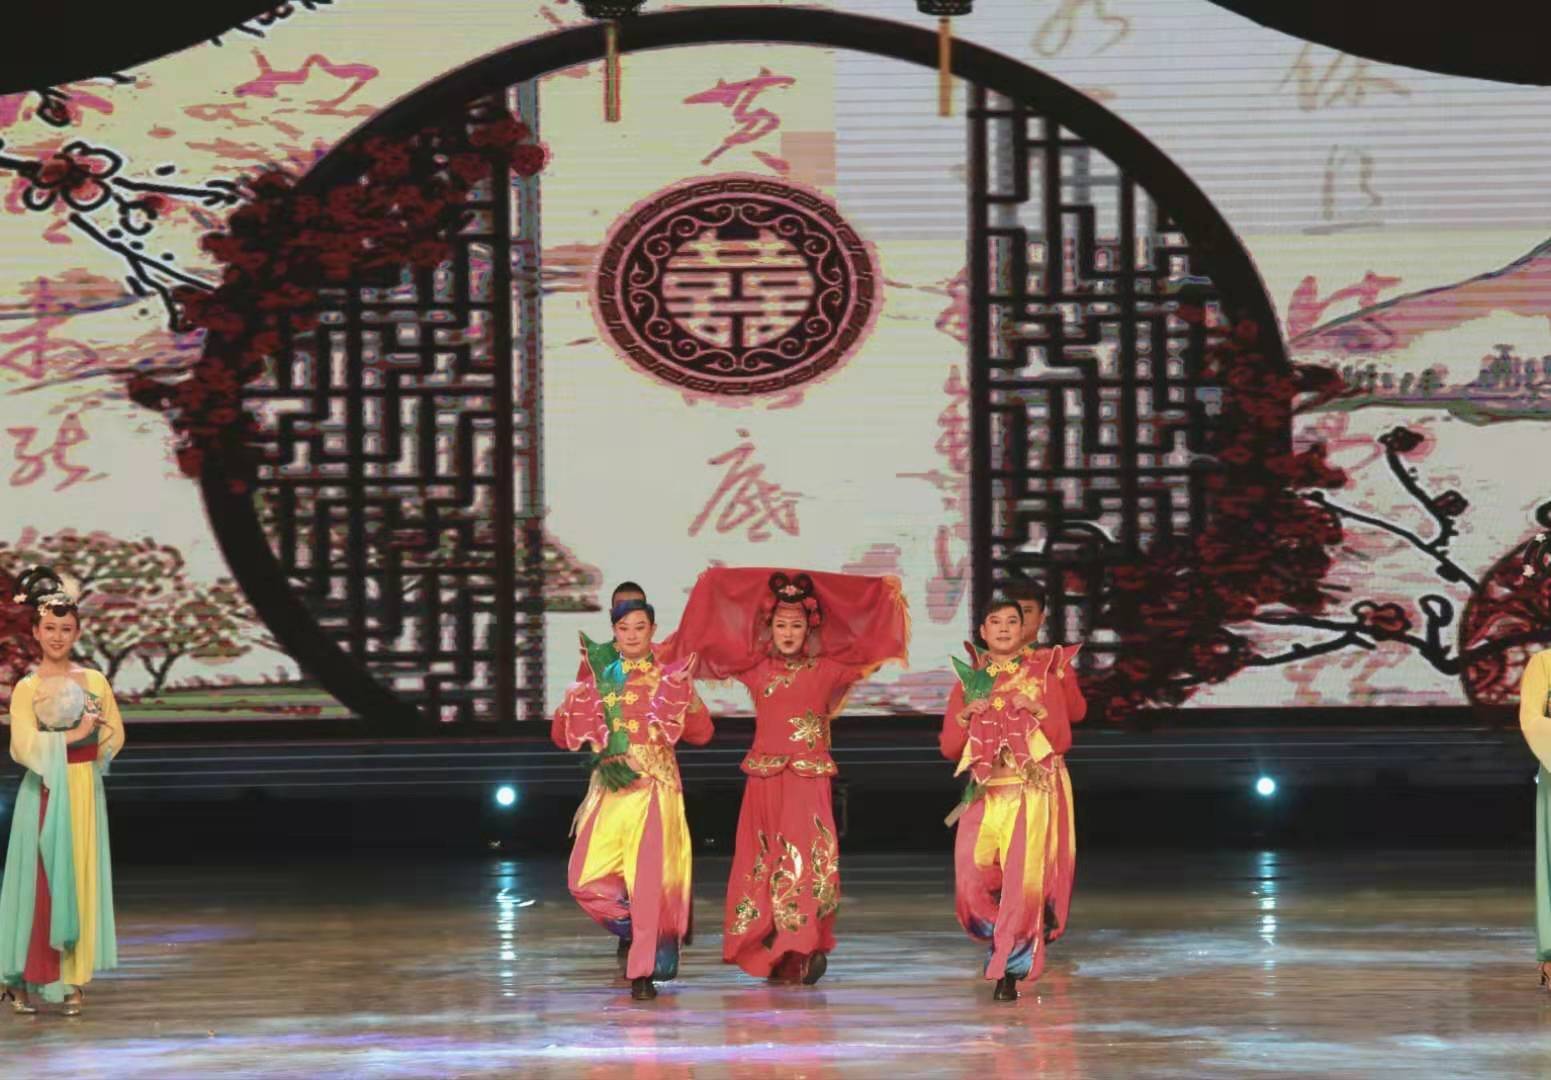 Феерическое выступление артистических дуэтов в фольклорном жанре в специальном показе на 17-м культурно-туристическом на фестивале Джомолунгма в тибетском городе Шигацзе